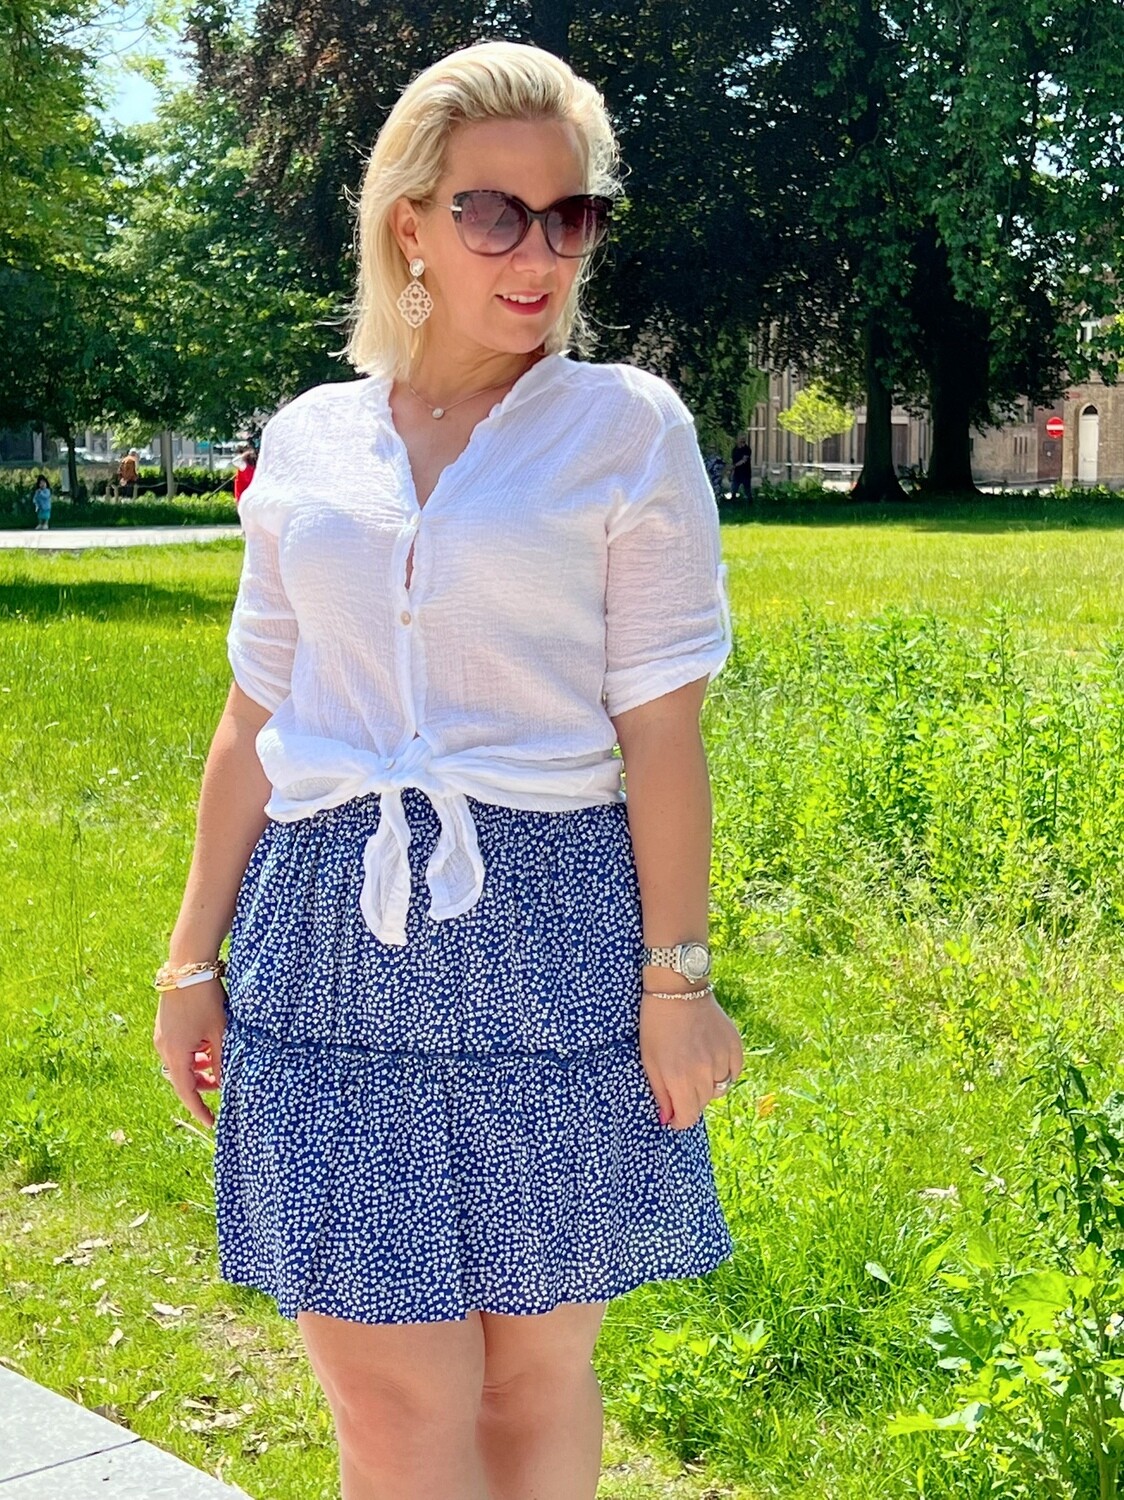 Blue daisy skirt